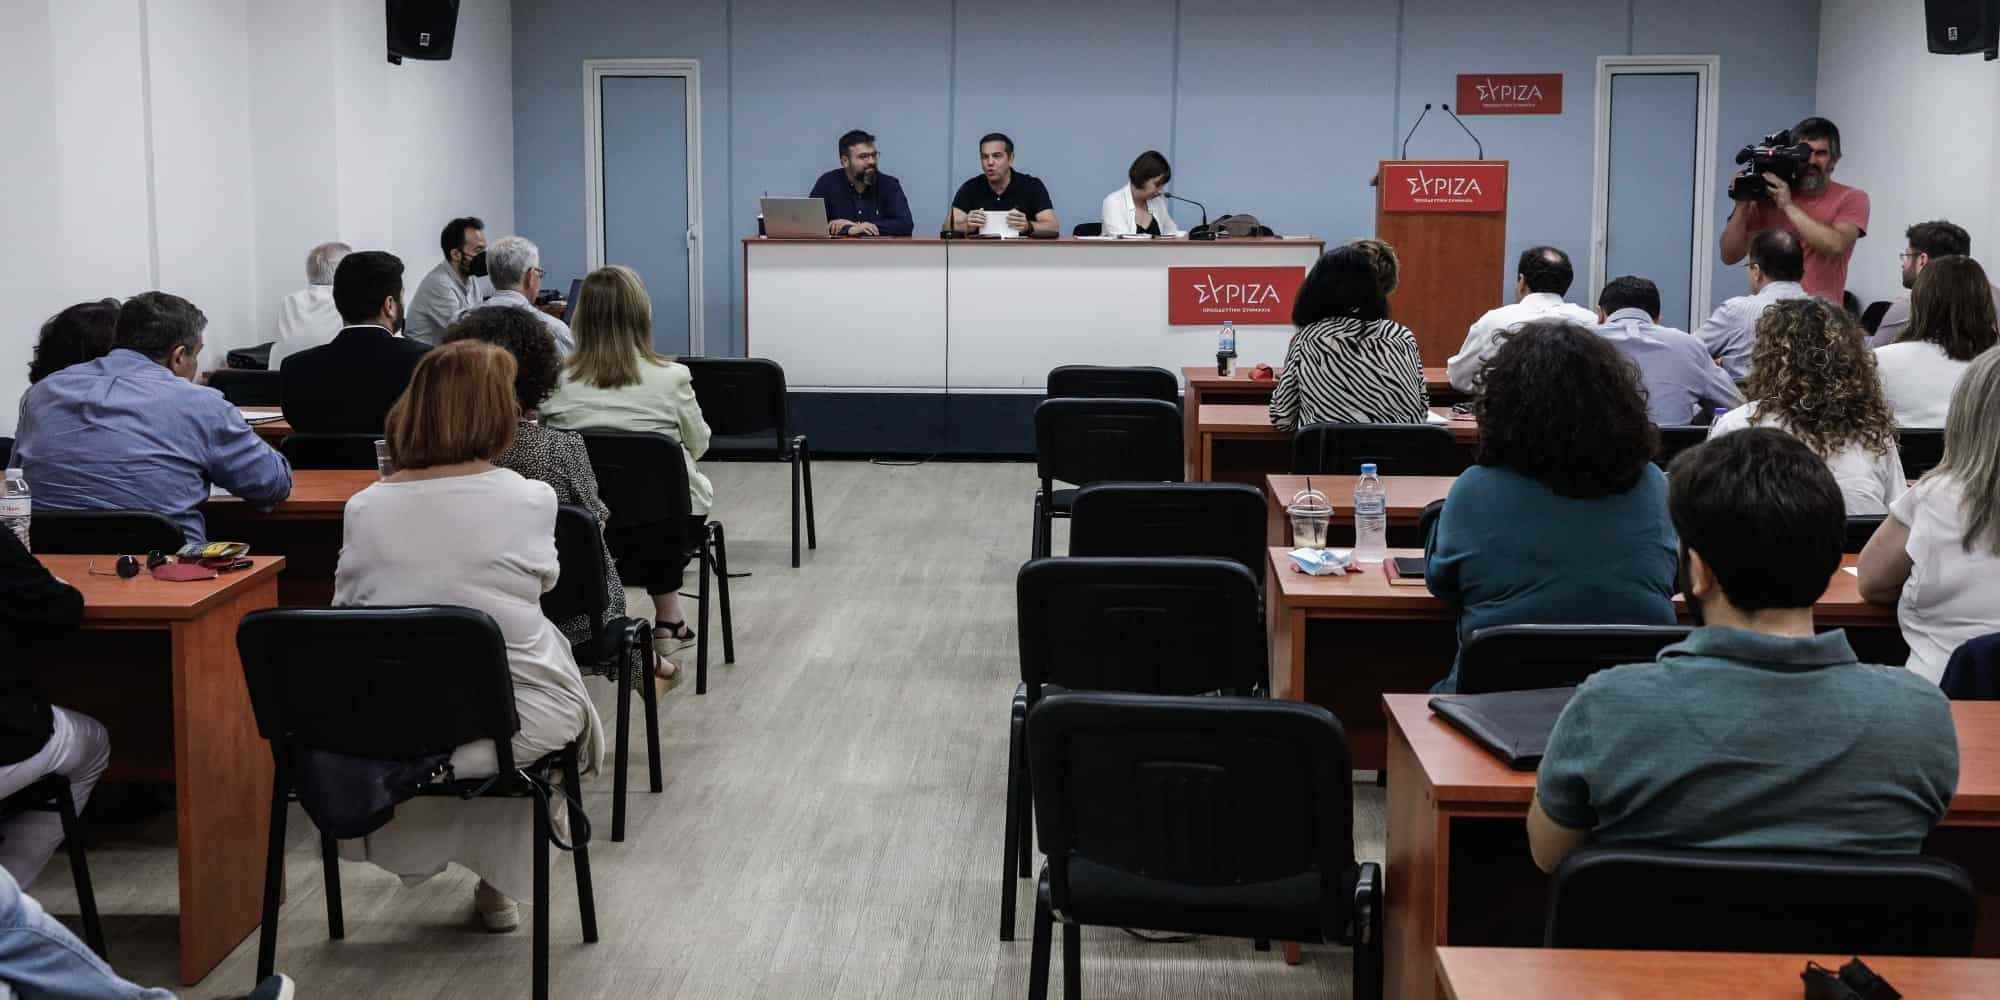 Πρώτη συνεδρίαση της νέας Πολιτικής Γραμματείας του ΣΥΡΙΖΑ Προοδευτική Συμμαχία